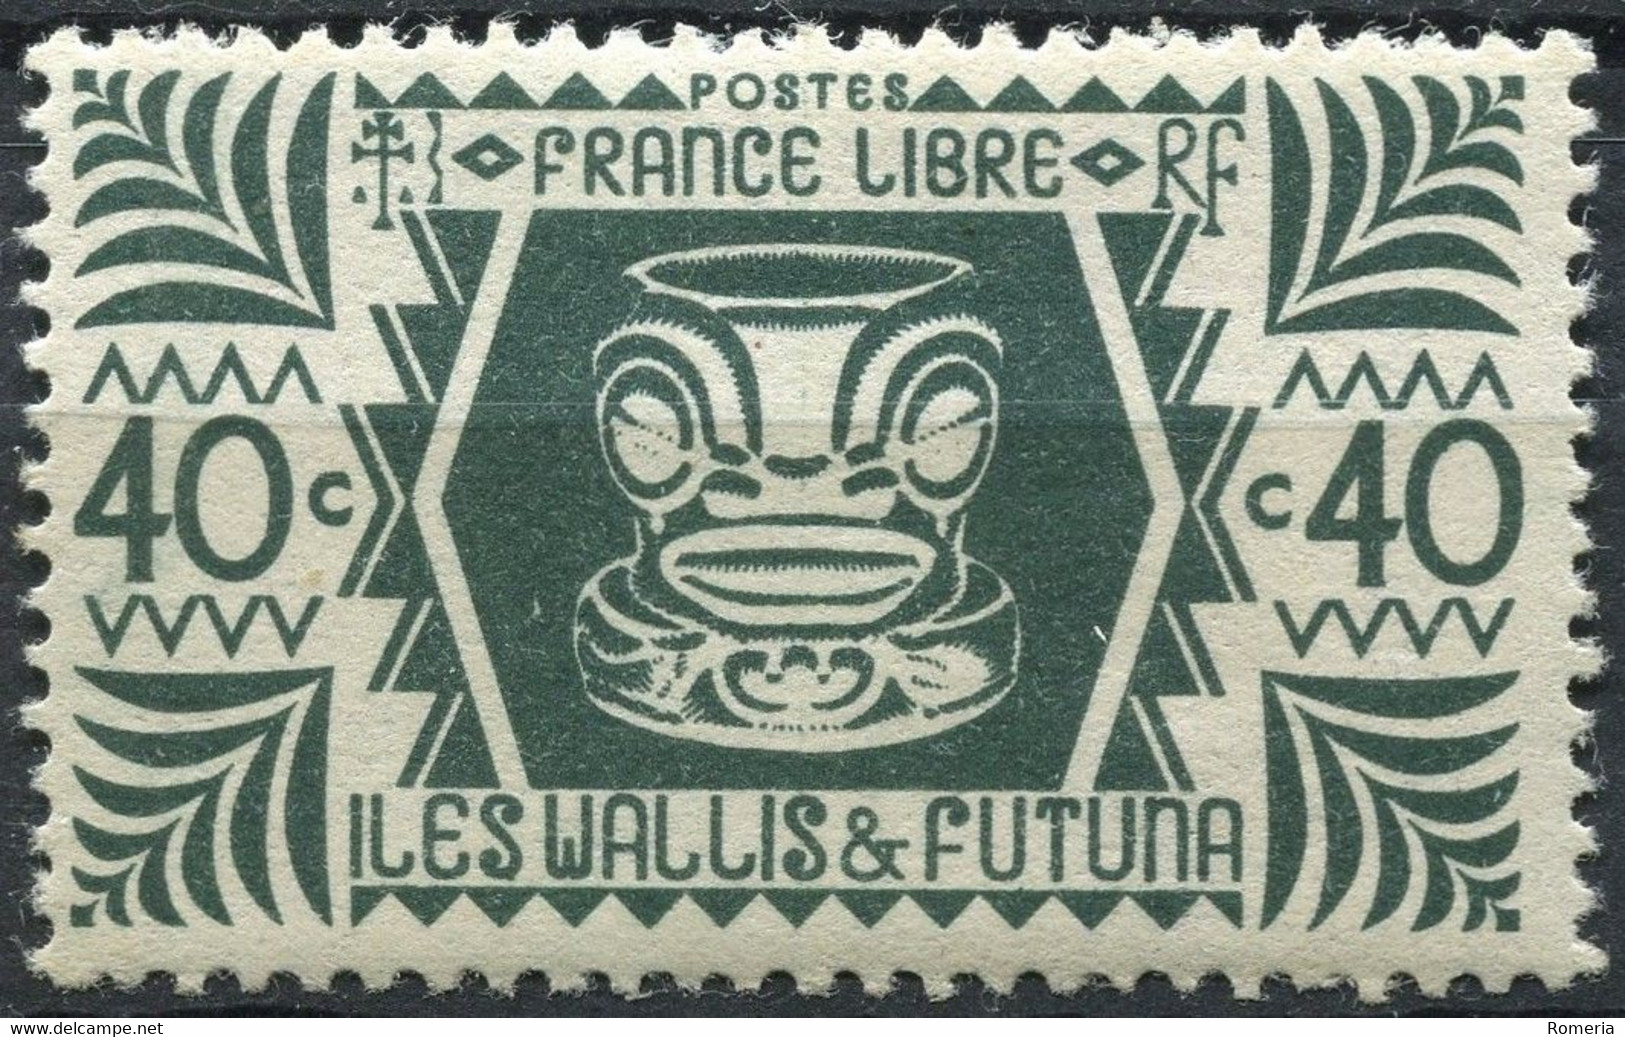 Wallis et Futuna - 1924 - 1944 - Lot timbres * TC + taxes - Nºs dans description